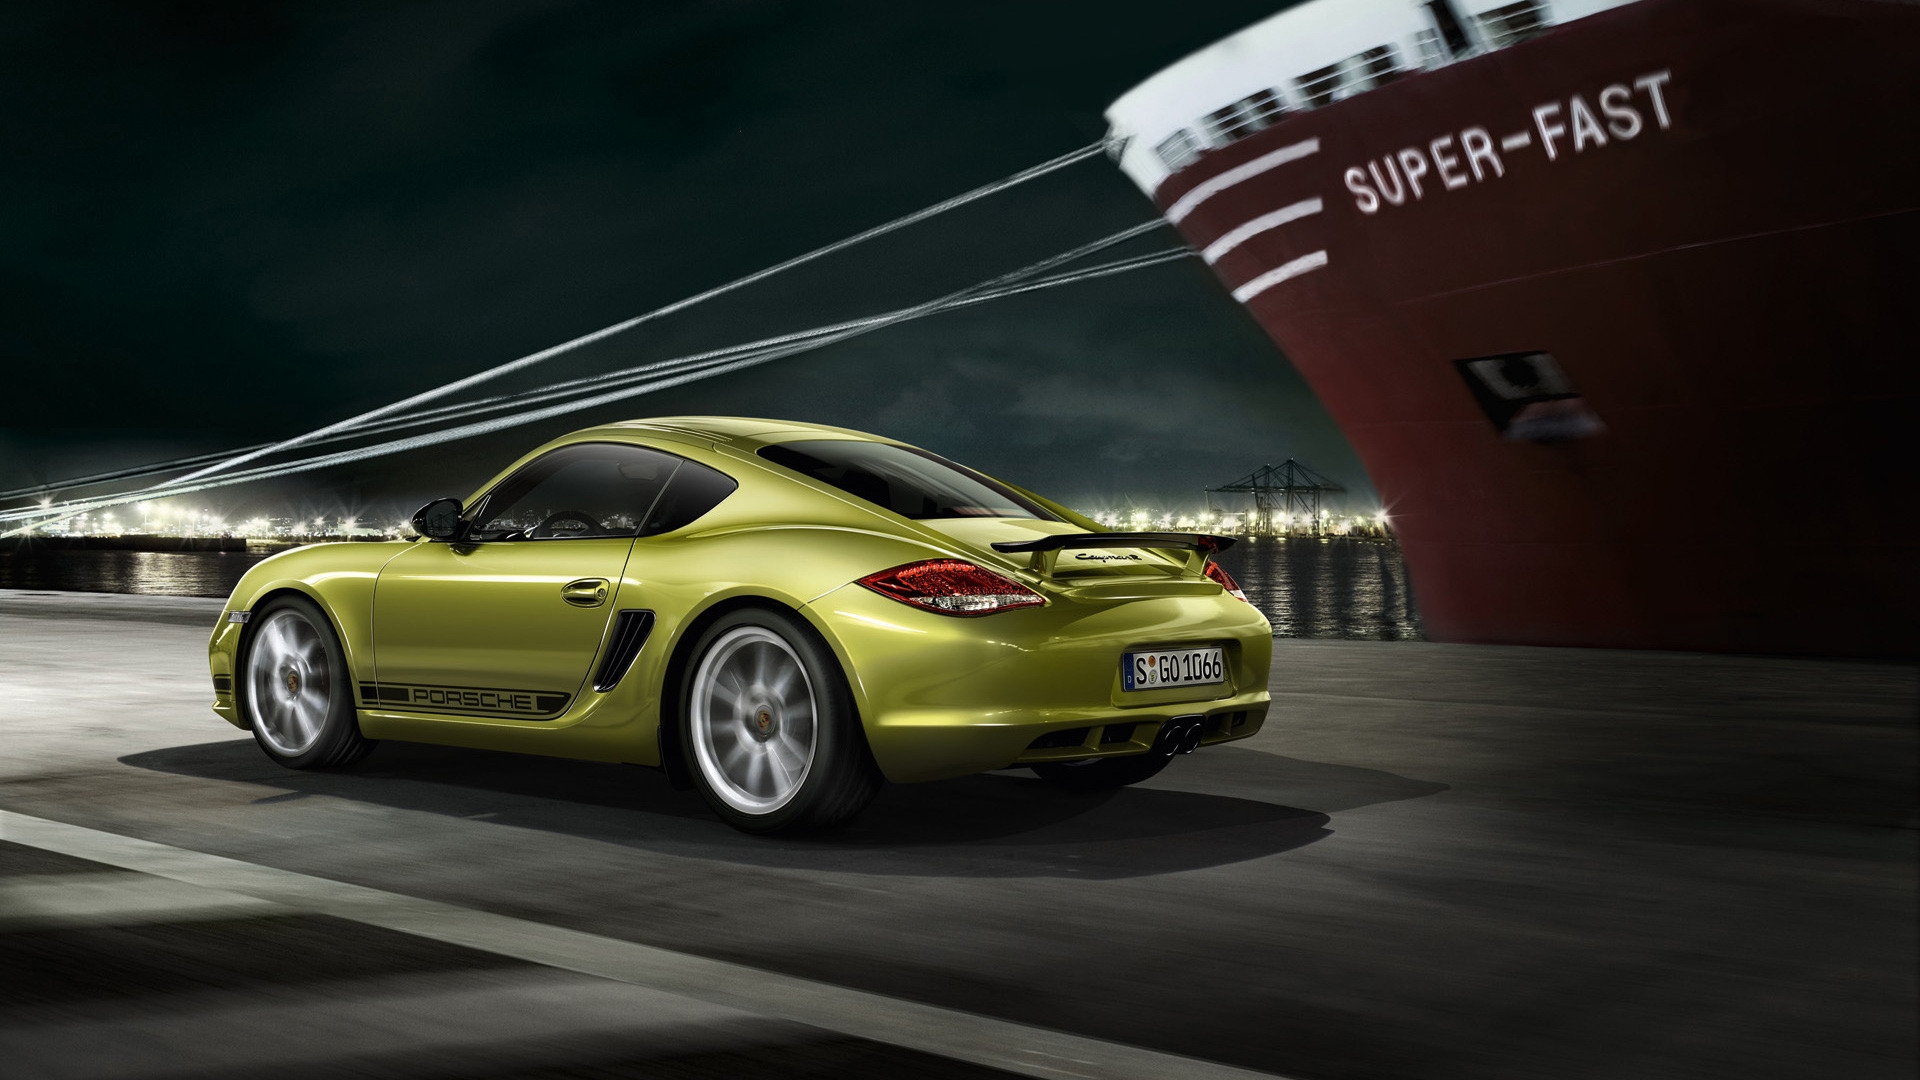 2011 Porsche Cayman R Speed for 1920 x 1080 HDTV 1080p resolution